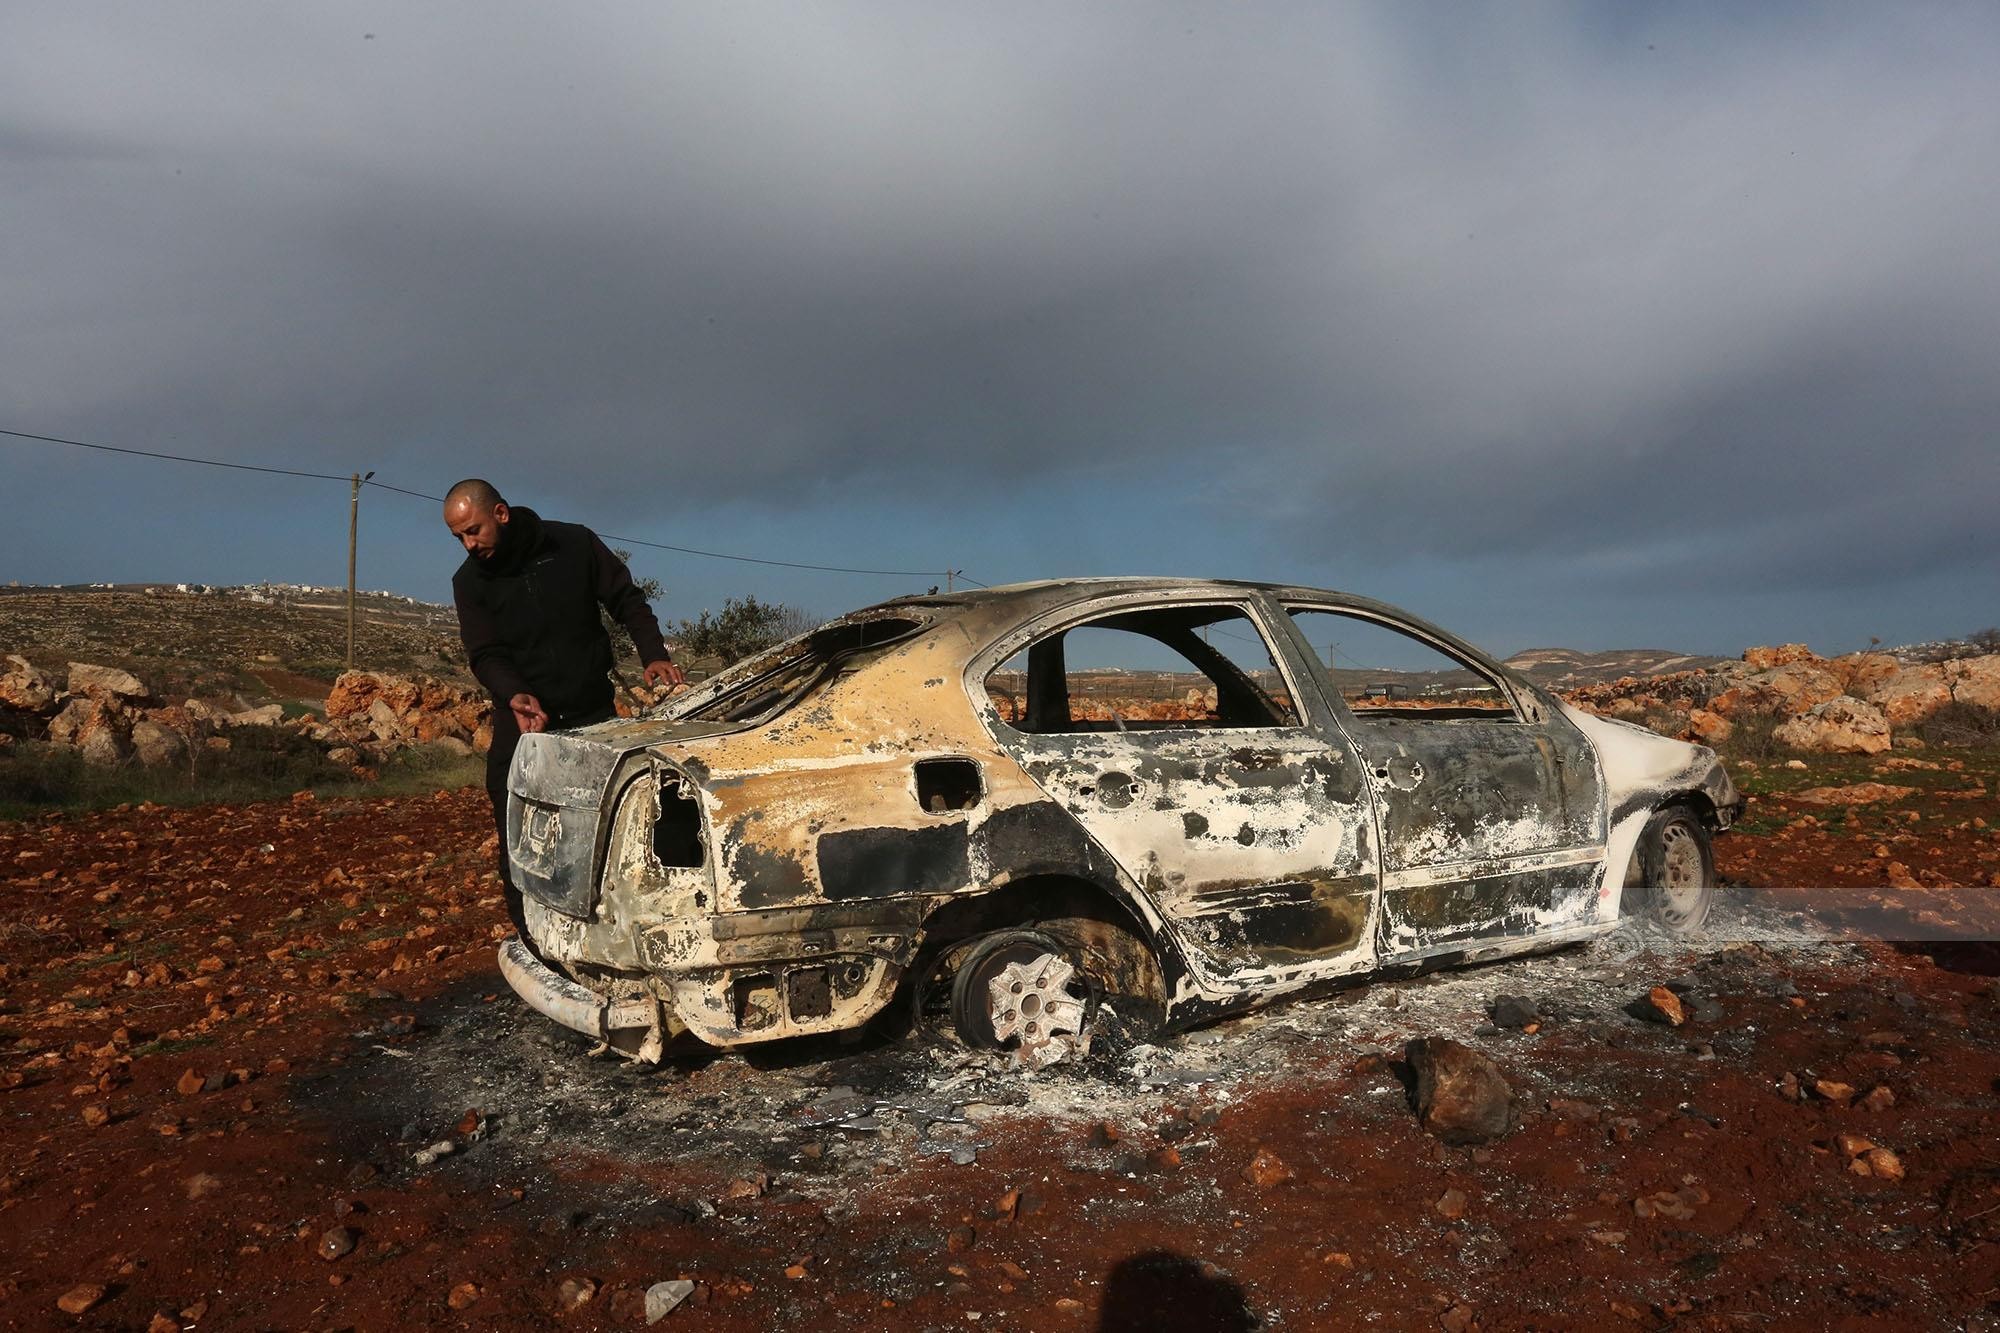 مستوطنون يحرقون ست مركبات فلسطينية بشكل كامل بين بلدتي عقربا ومجدل بني فاضل قرب نابلس 3.jpg